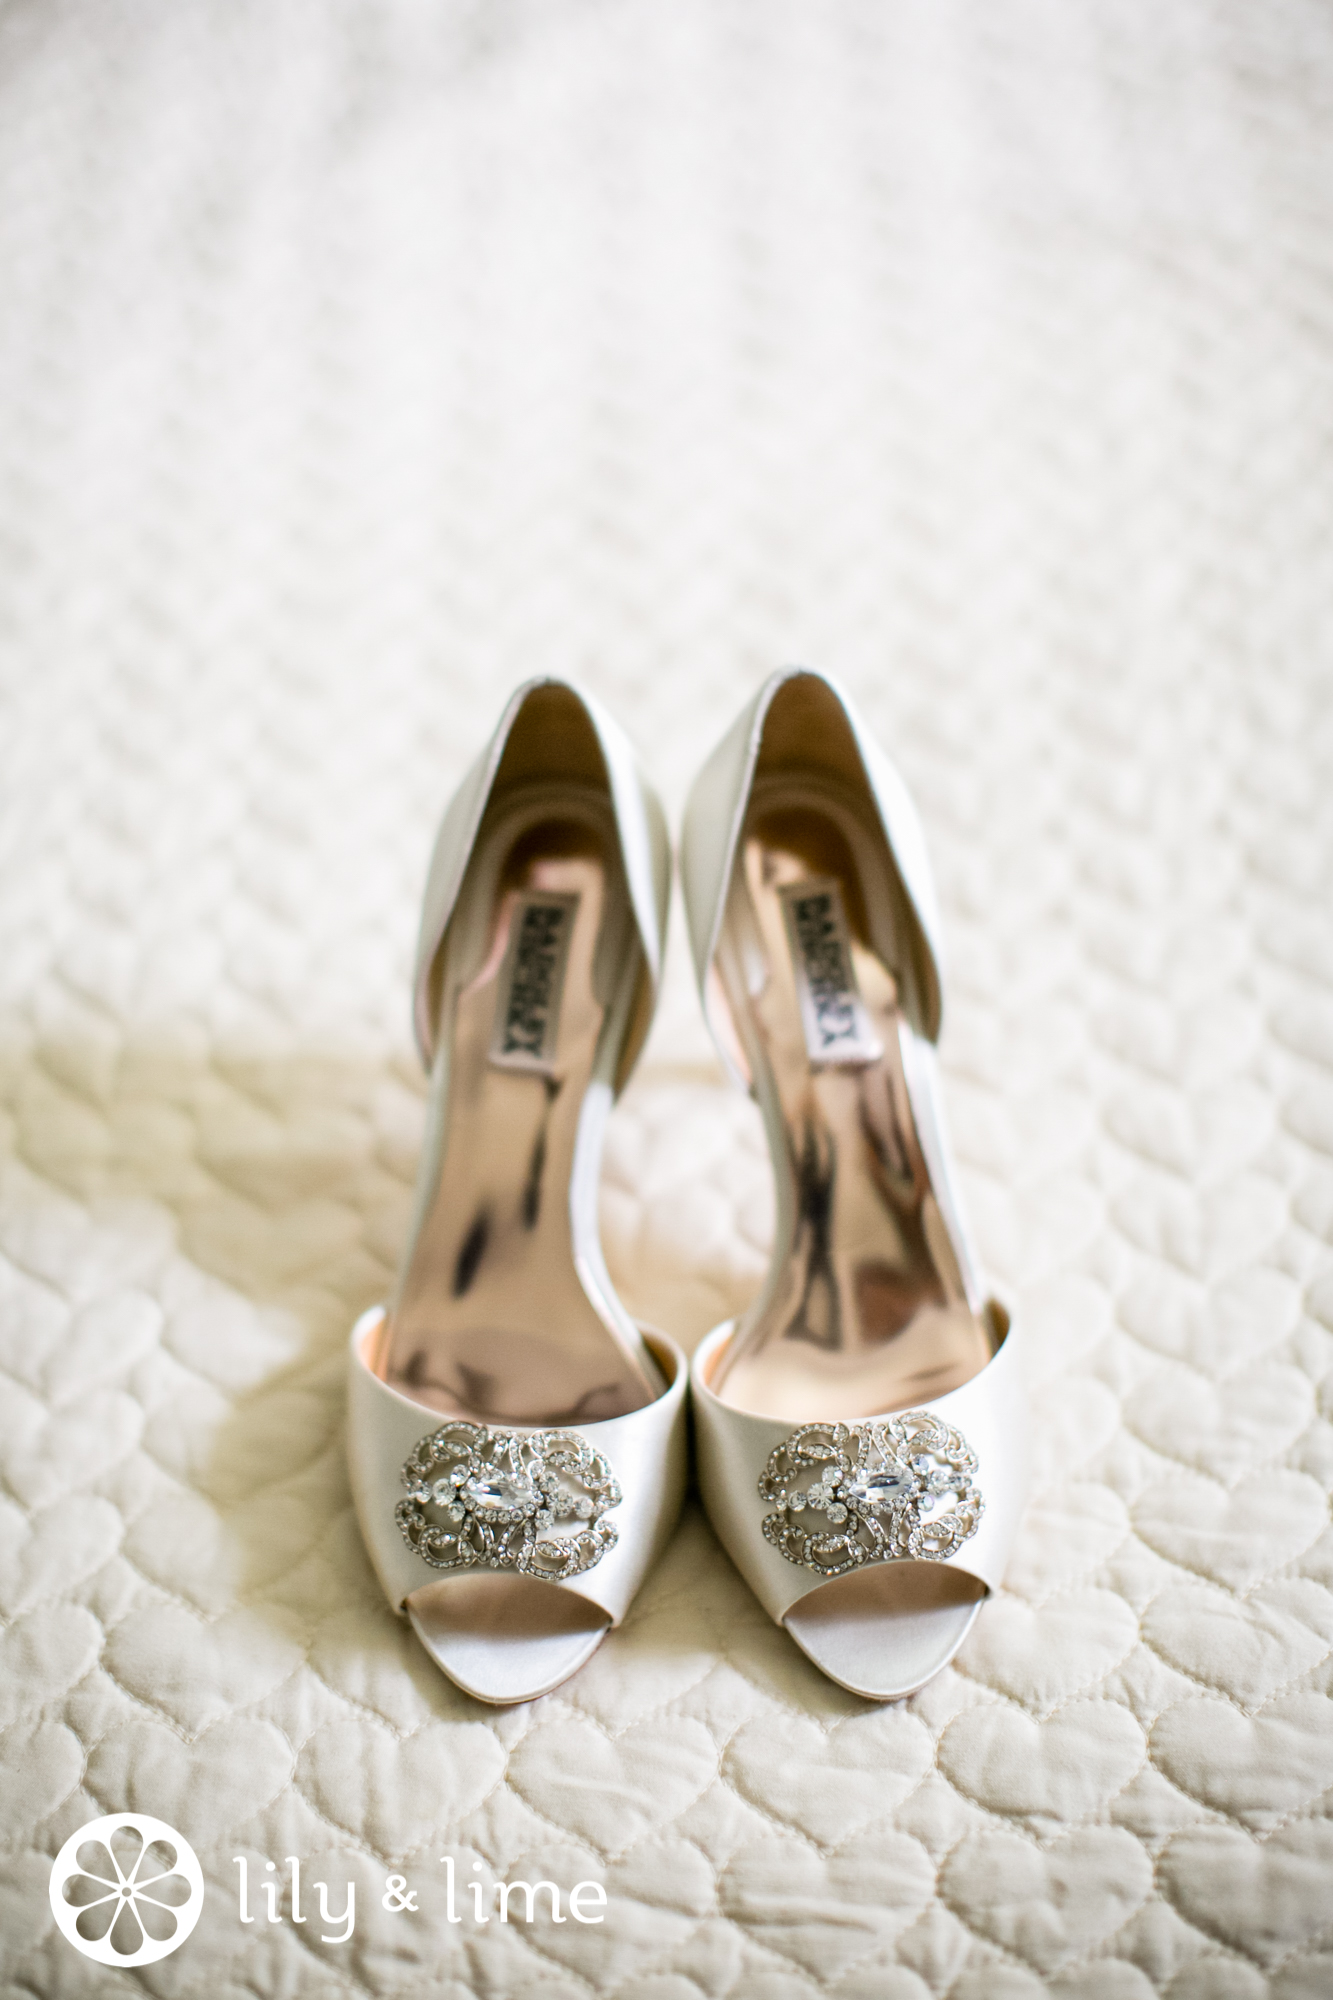 peep-toe wedding shoes